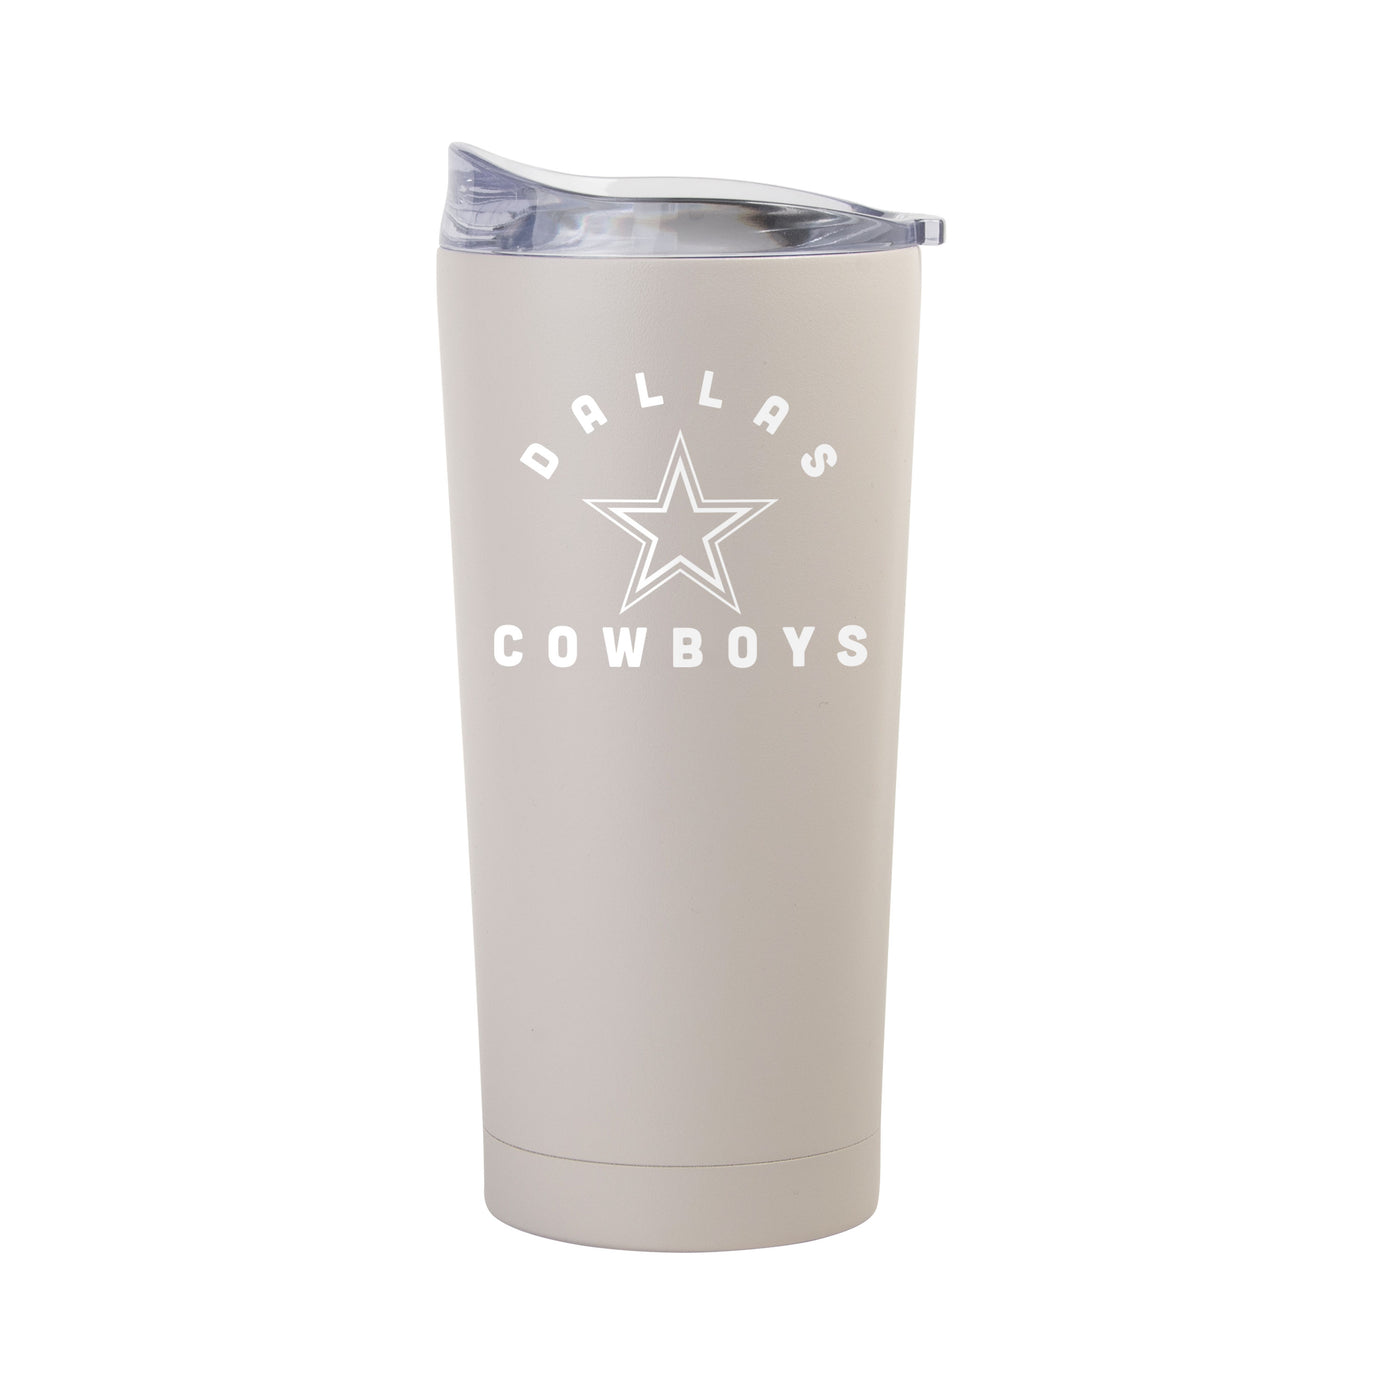 Dallas Cowboys 20oz Archway Sand Powder Coat Tumbler